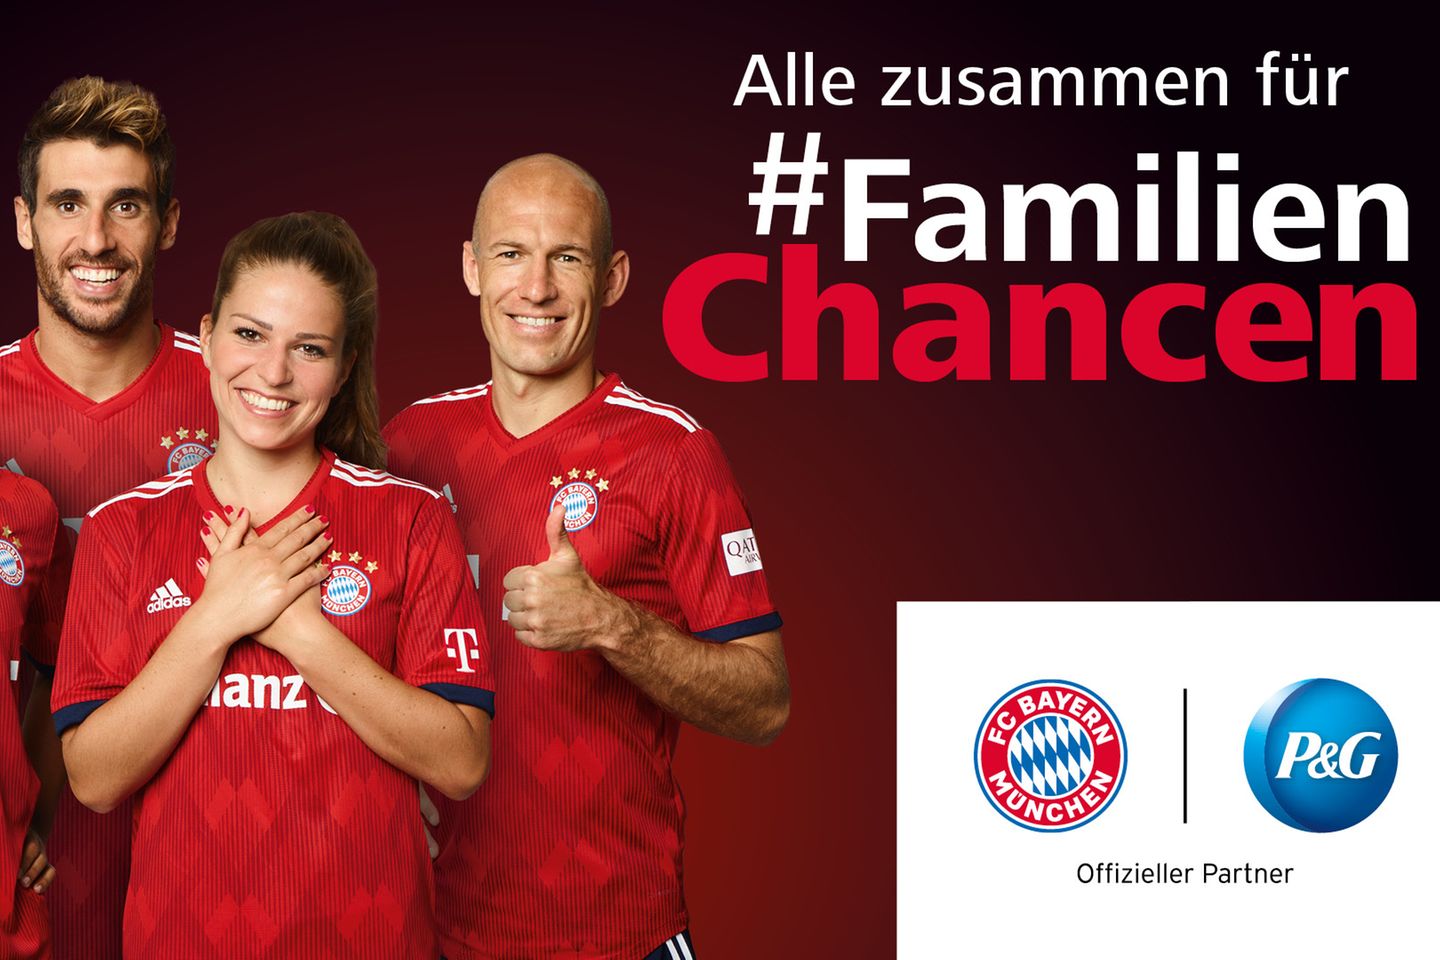 Die Aktion #FamilienChancen von P&G wird vom FC Bayern München unterstützt  